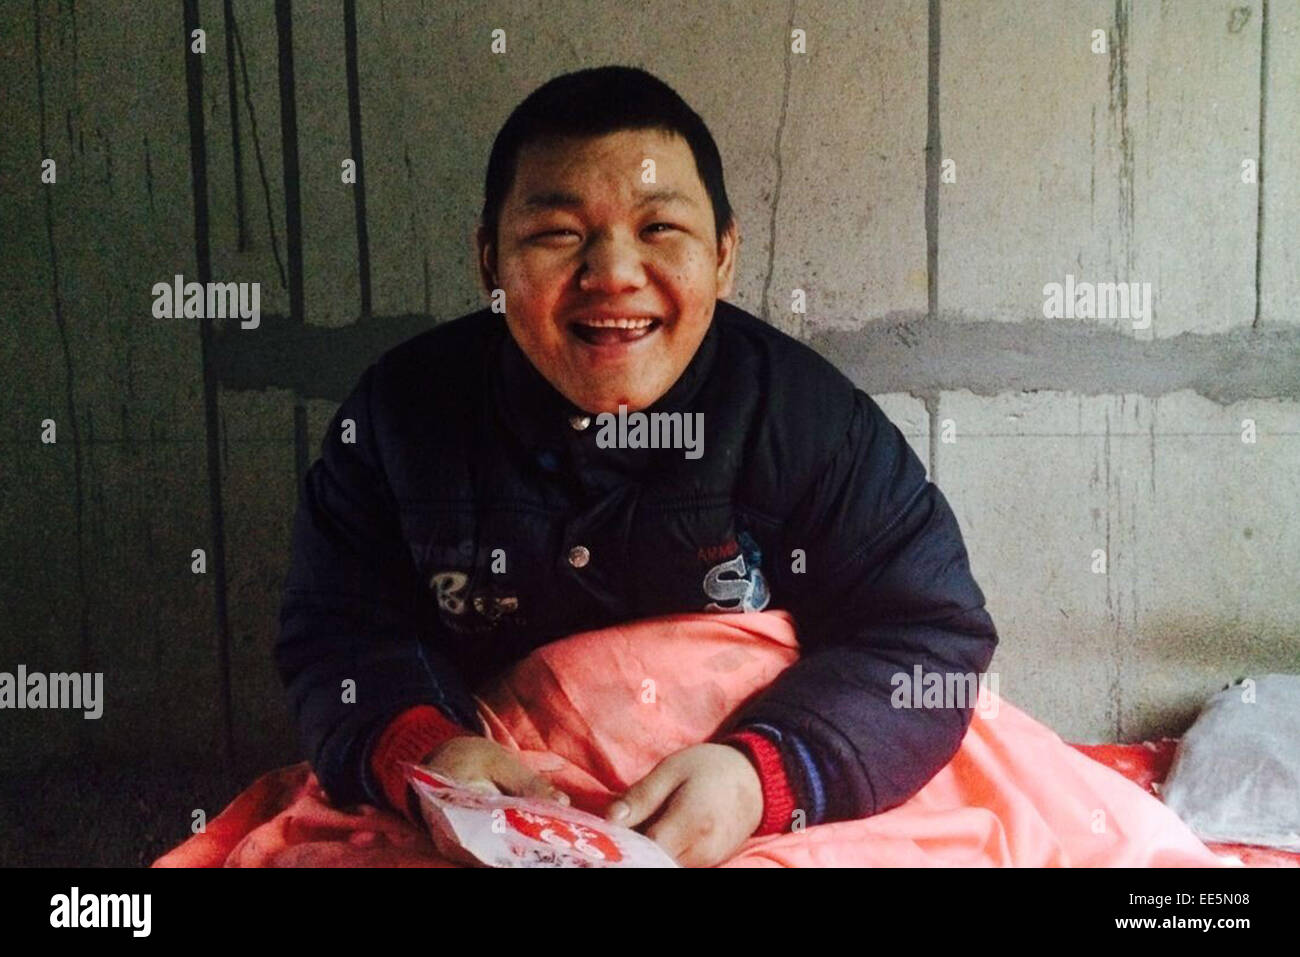 13 janvier 2015 - LA CHINE JAN 14 : le garçon de 18 ans appelé Ke cheng a été enchaîné sur lit pour 8 ans. Il a reçu un diagnostic de l'épilepsie depuis sa naissance et j'ai dû prendre tous les jours. medincine Cependant, après la mort de son père dans un accident, ils ne peuvent pas se permettre le long yuan 400(65 dollars) Frais de médecine et sa mère n'avait pas le choix mais est allé travailler en ville afin qu'elle peut faire plus d'argent. parce qu'il a toujours détruit les choses quand sa maladie mis en lumière, de sorte Ke's grandmather enchaîné sur le lit depuis qu'il avait 8 ans. (Crédit Image : © SIPA/Asie ZUMA Wire) Banque D'Images